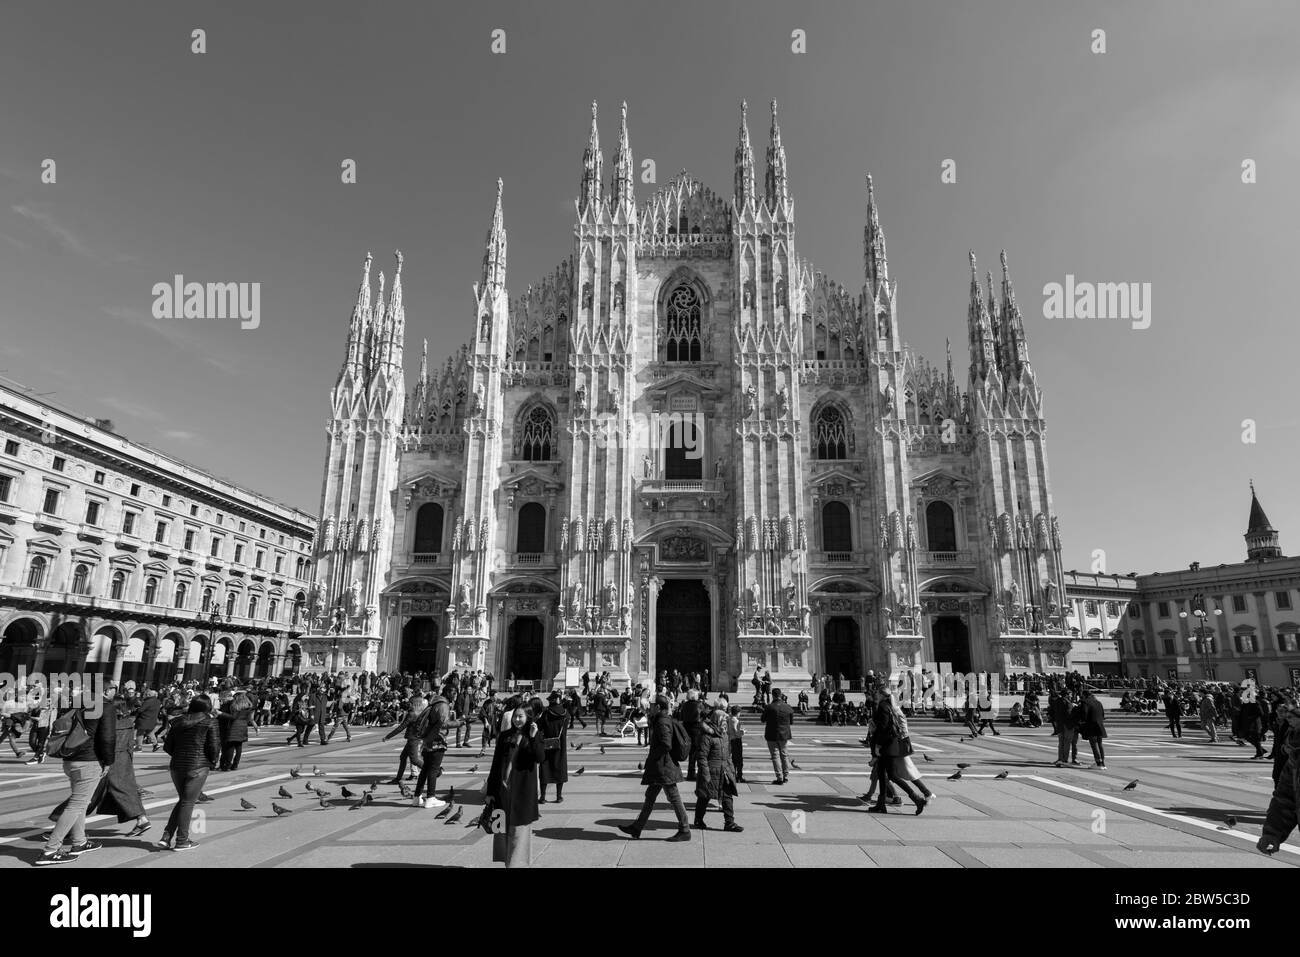 MILÁN, ITALIA - 16, MARZO de 2018: Imagen en blanco y negro del Duomo di Milano, una importante catedral católica de Milán, Italia. Foto de stock